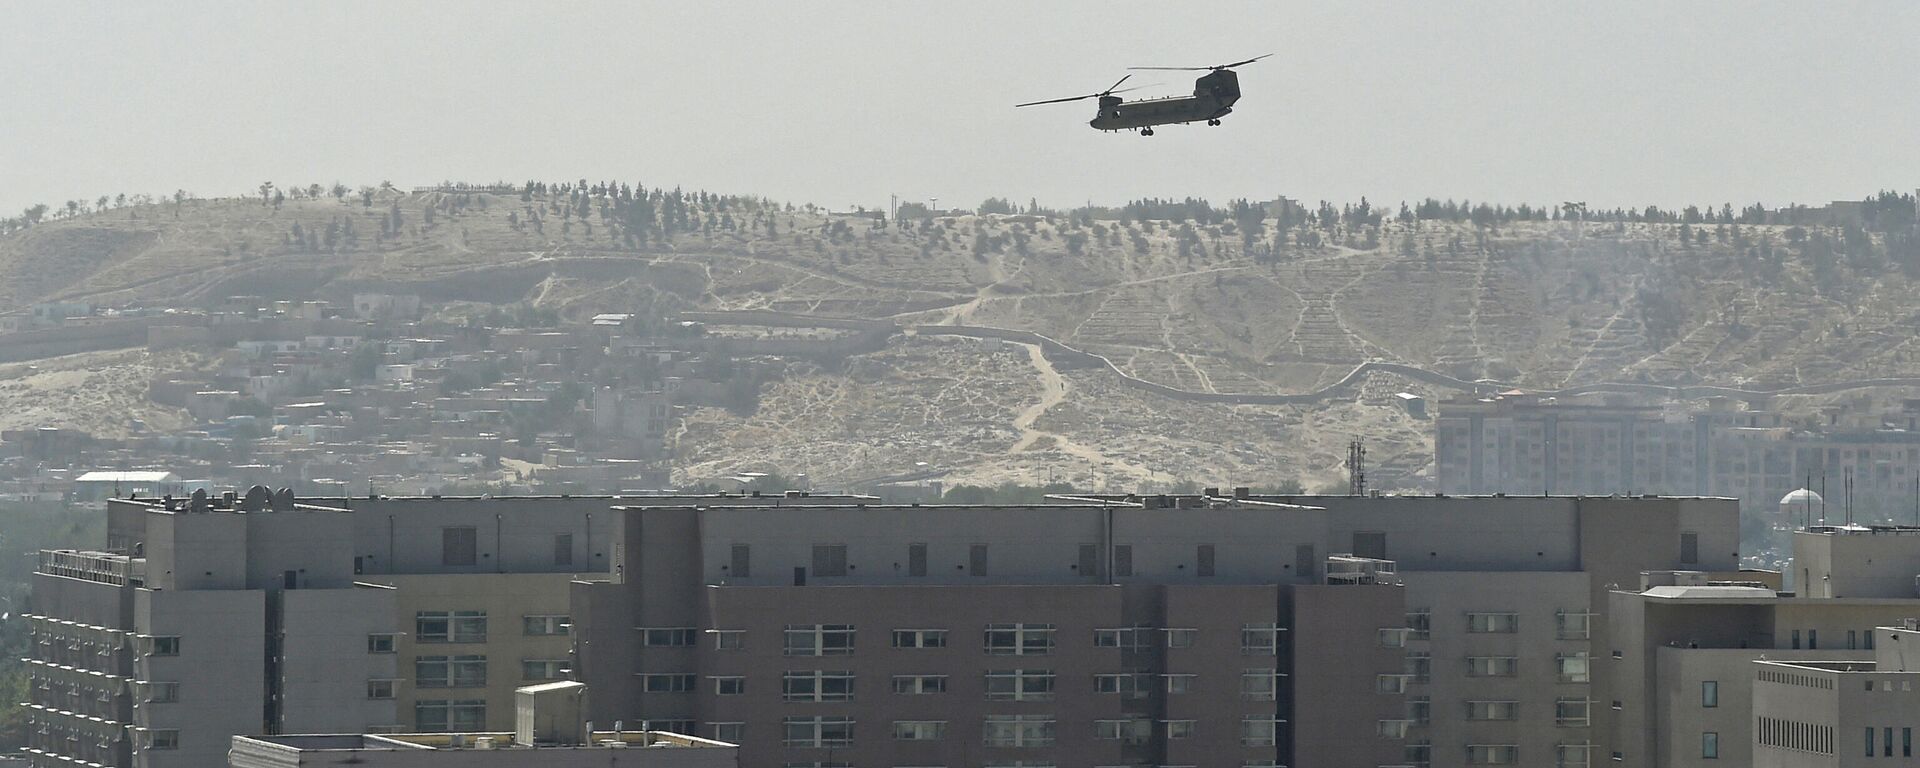 Un helicóptero militar estadounidense volando sobre la embajada de Estados Unidos en Kabul el 15 de agosto de 2021 - Sputnik Mundo, 1920, 16.08.2021